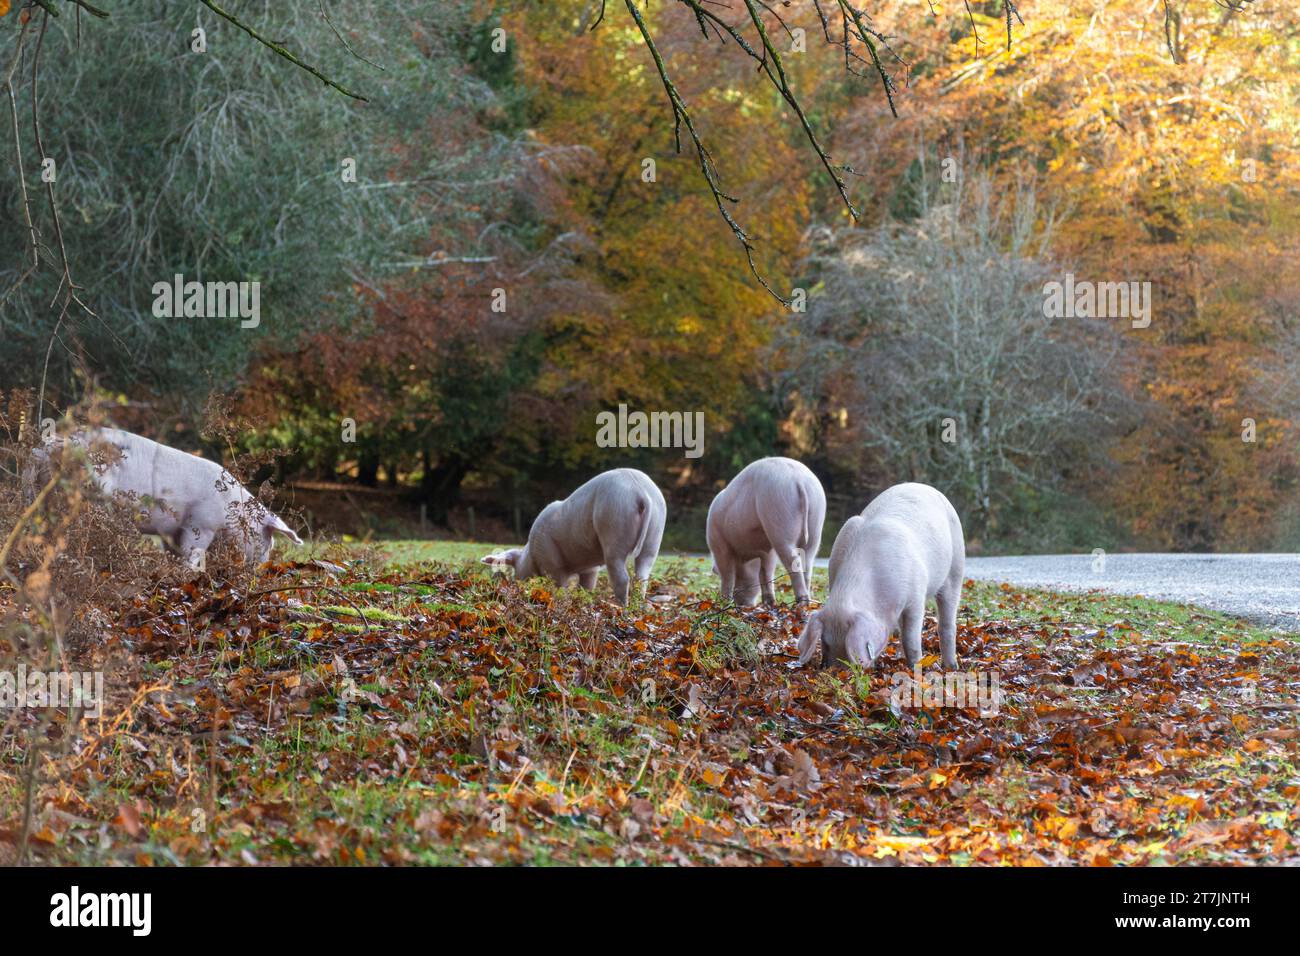 Pannage Season wenn Hausschweine im Herbst durch den New Forest ziehen, um Eicheln und Nüsse zu essen (Eicheln sind giftig für Ponys), November, England, Großbritannien Stockfoto